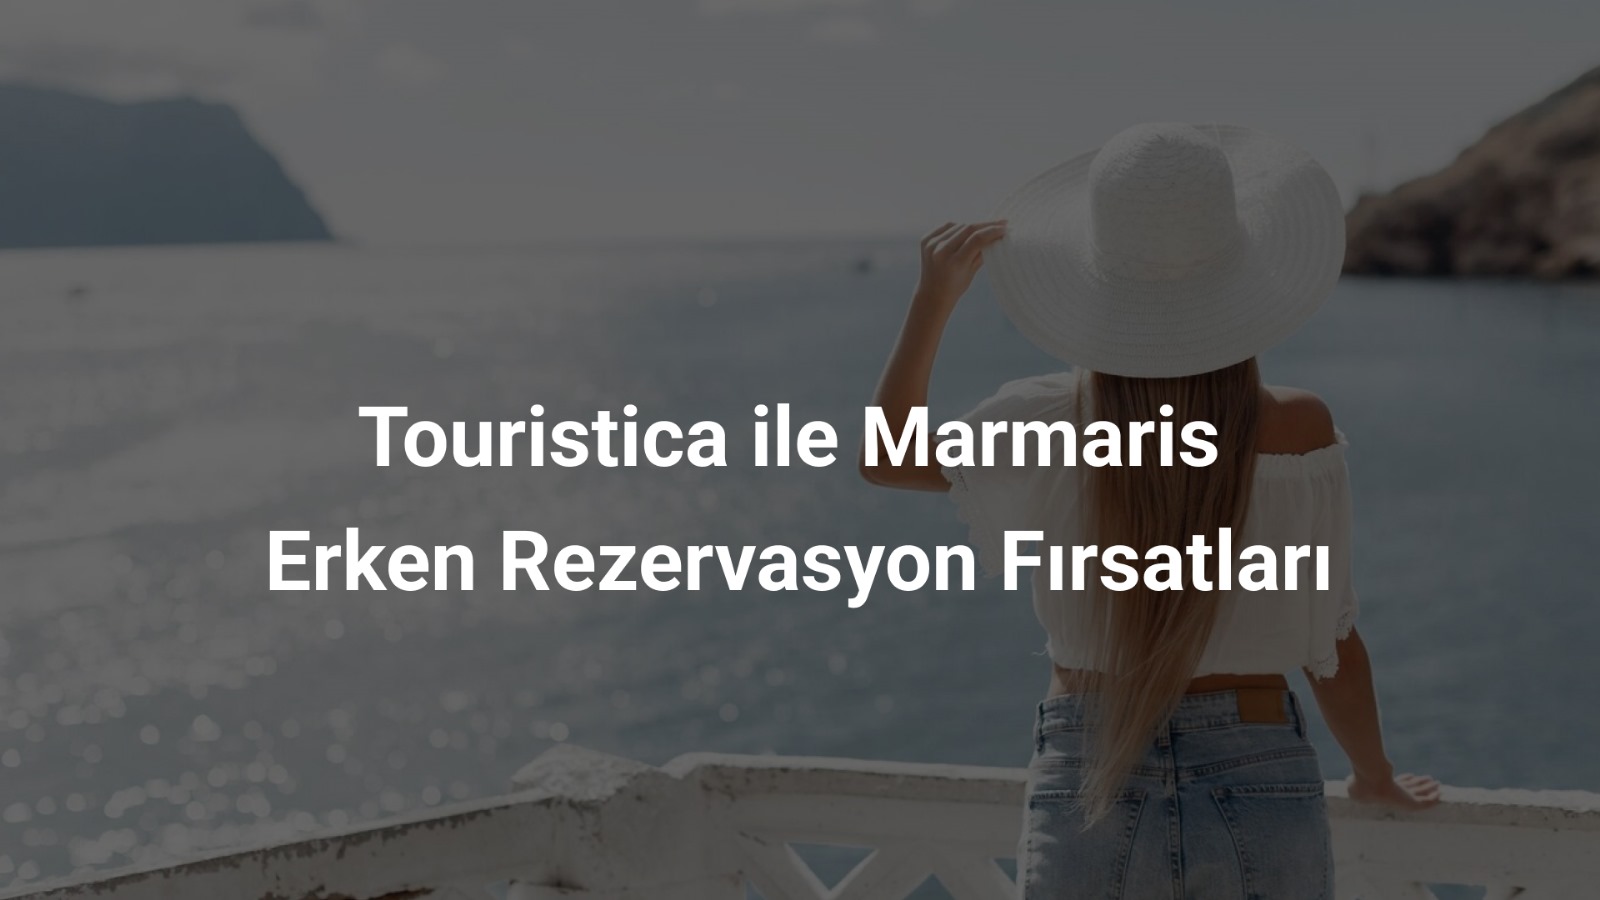 Touristica ile Marmaris Erken Rezervasyon Fırsatları